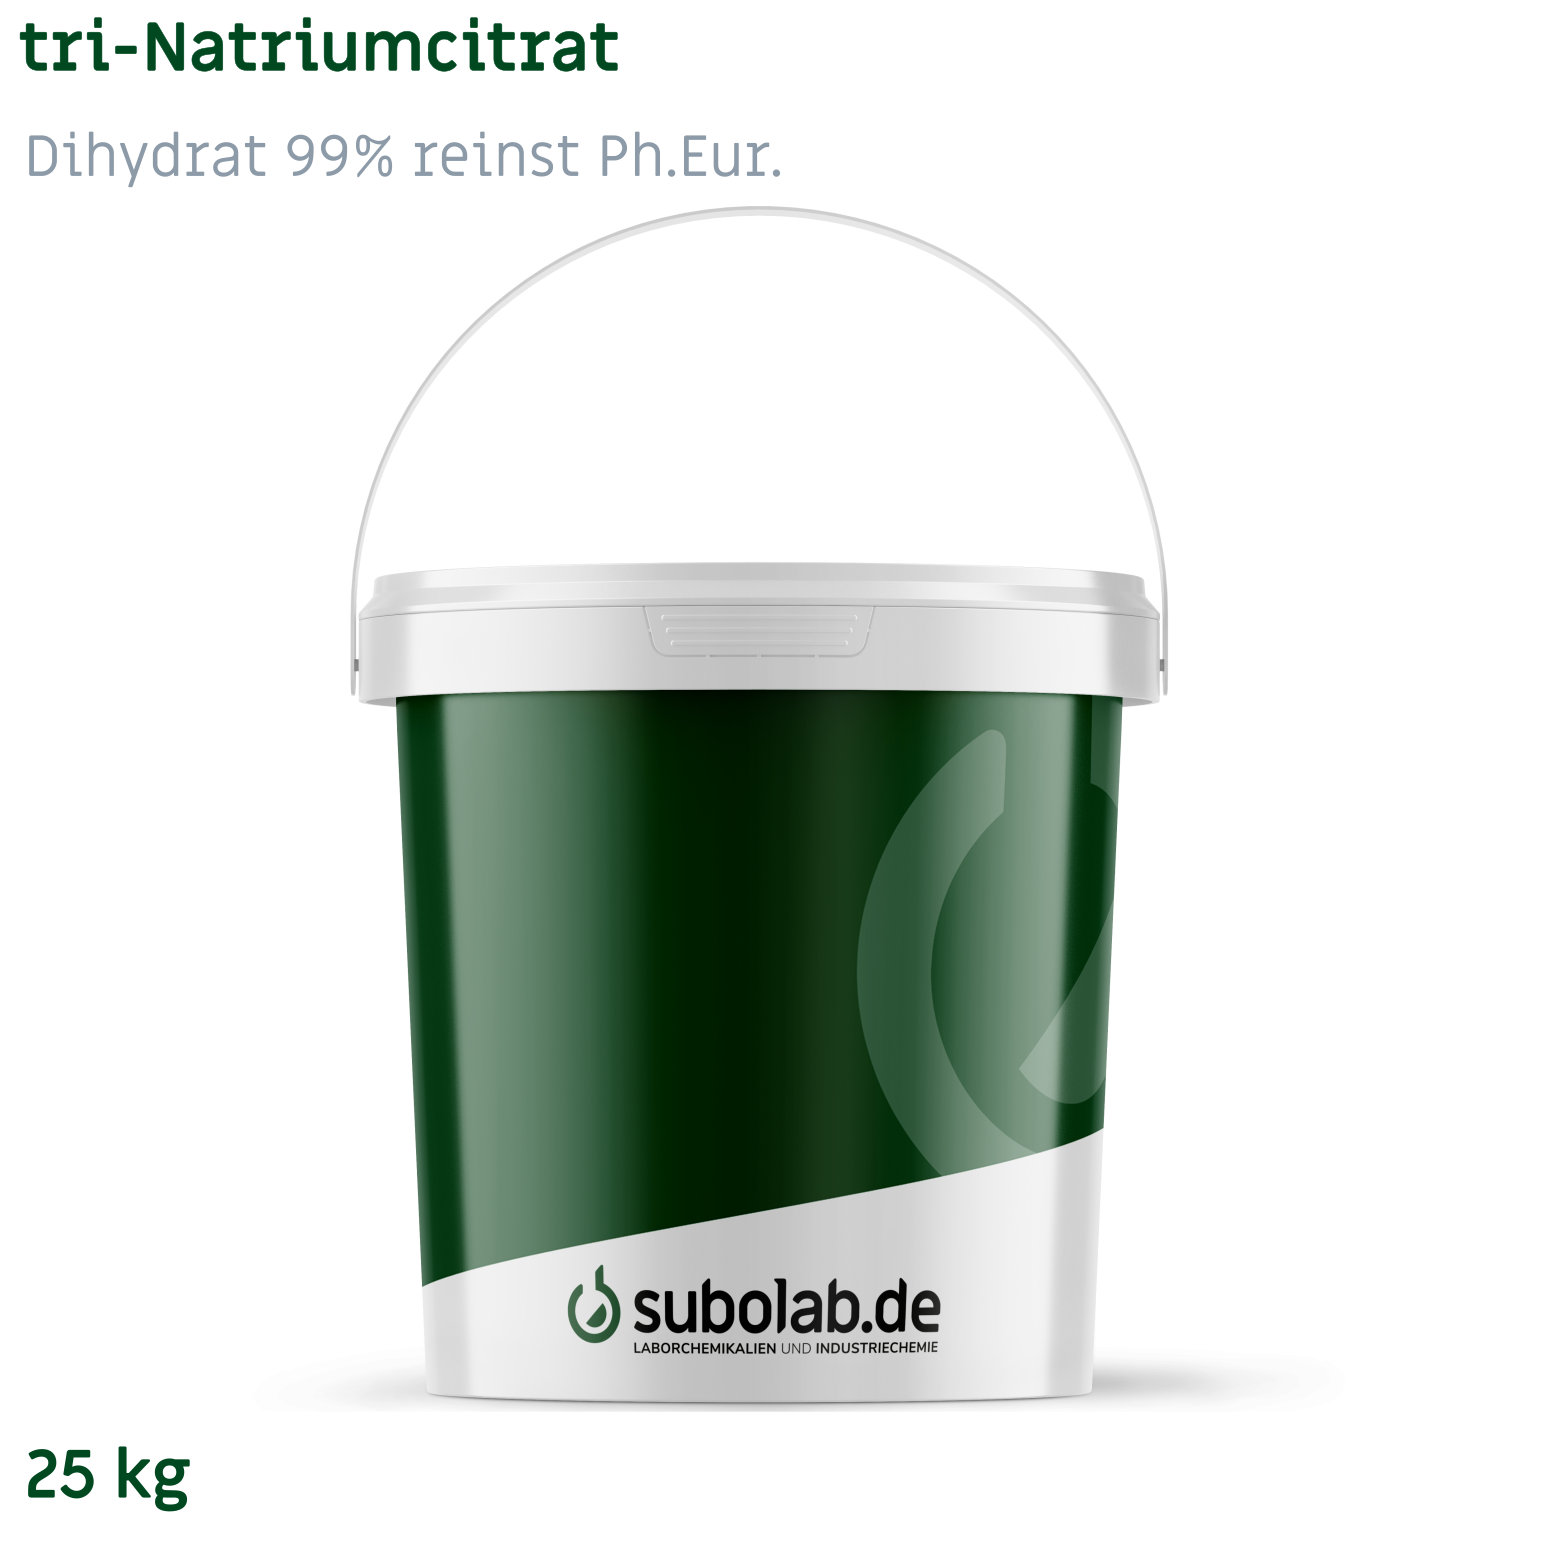 Bild von tri-Natriumcitrat - Dihydrat 99% reinst Ph.Eur. (25 kg)